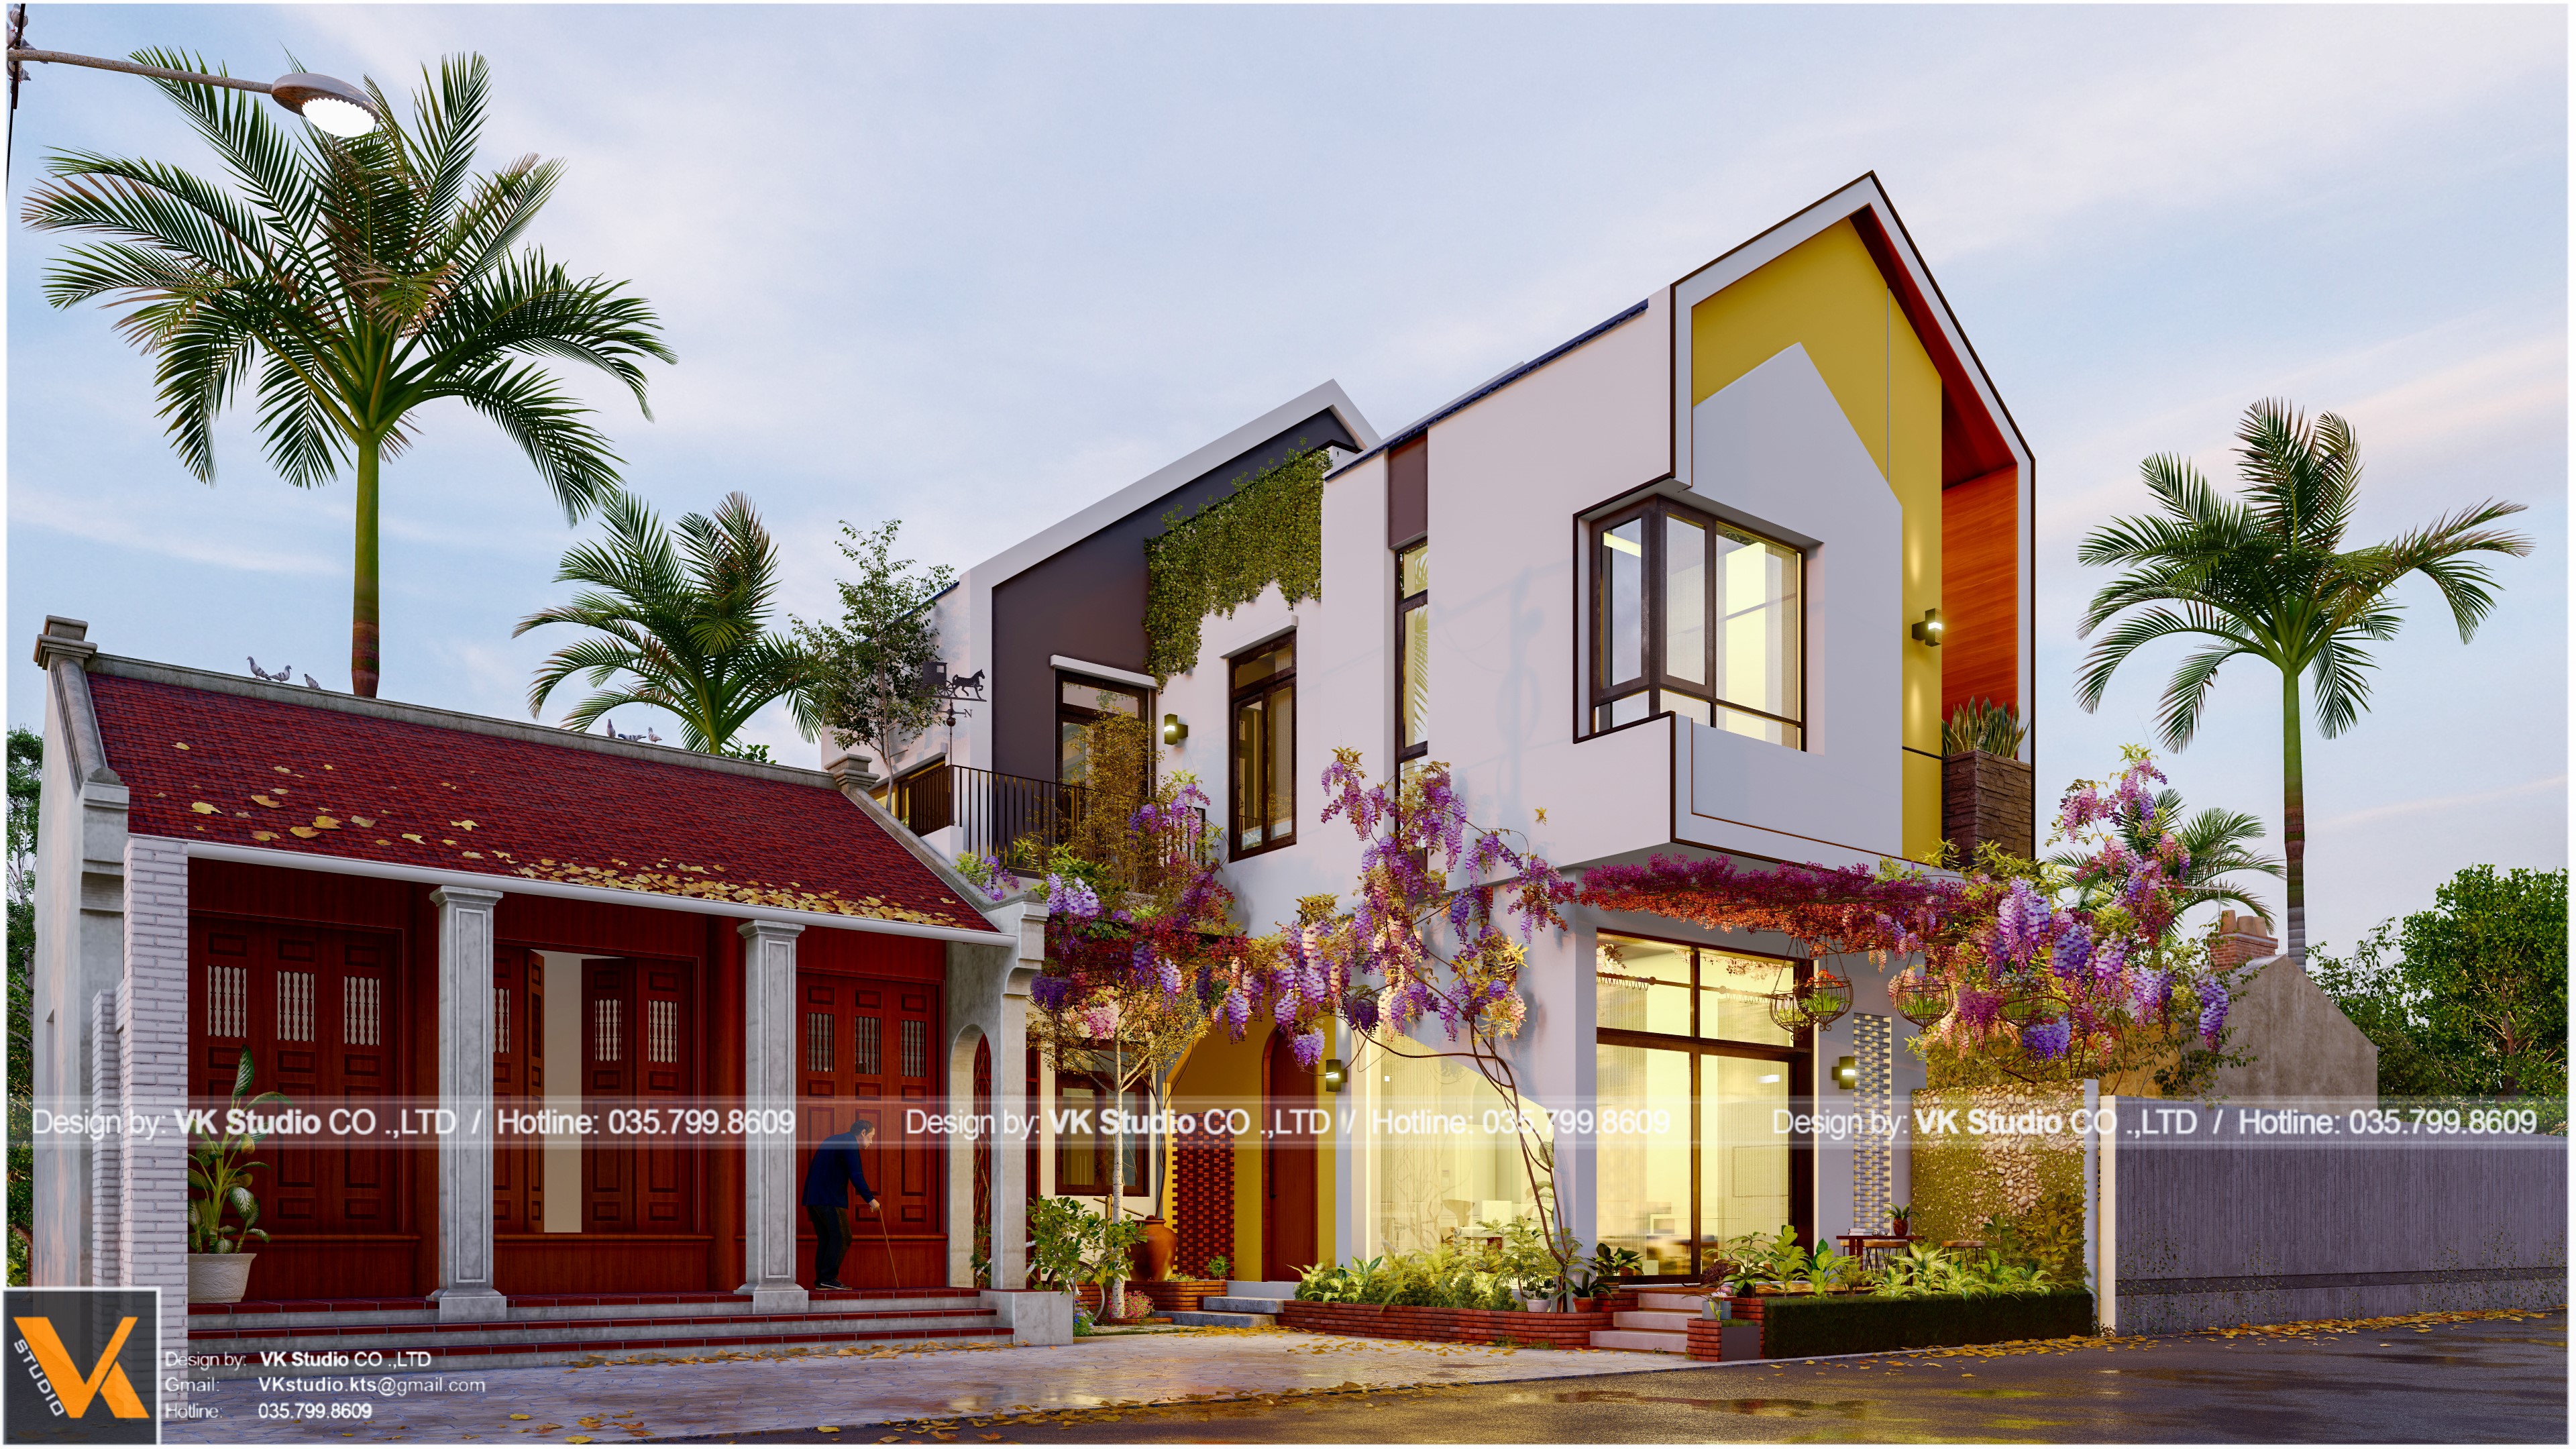 Thiết kế Nhà tại Hà Nội T.DP House 1592904855 8